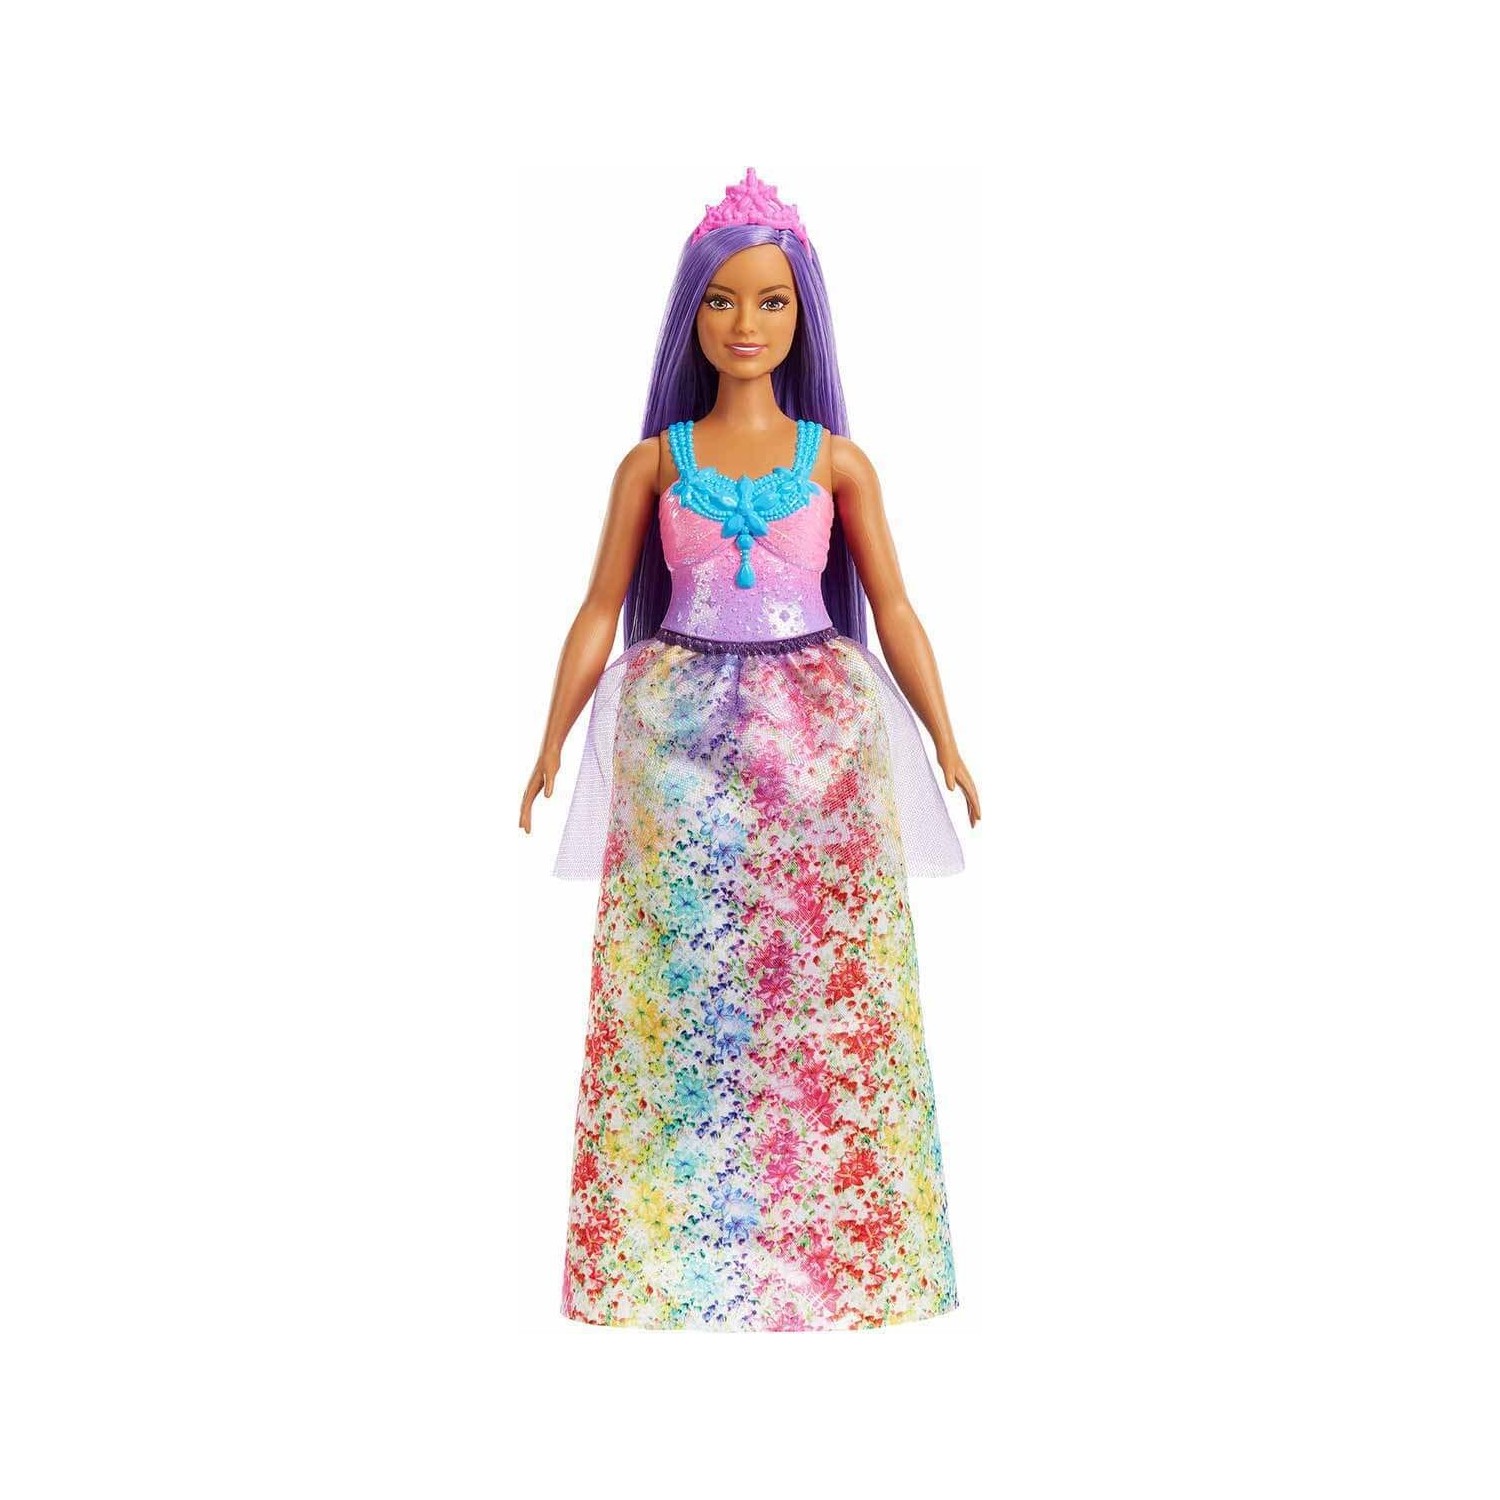 Кукла Barbie Dreamtopia Princess HGR17 кукла barbie dreamtopia rainbow latiin princess